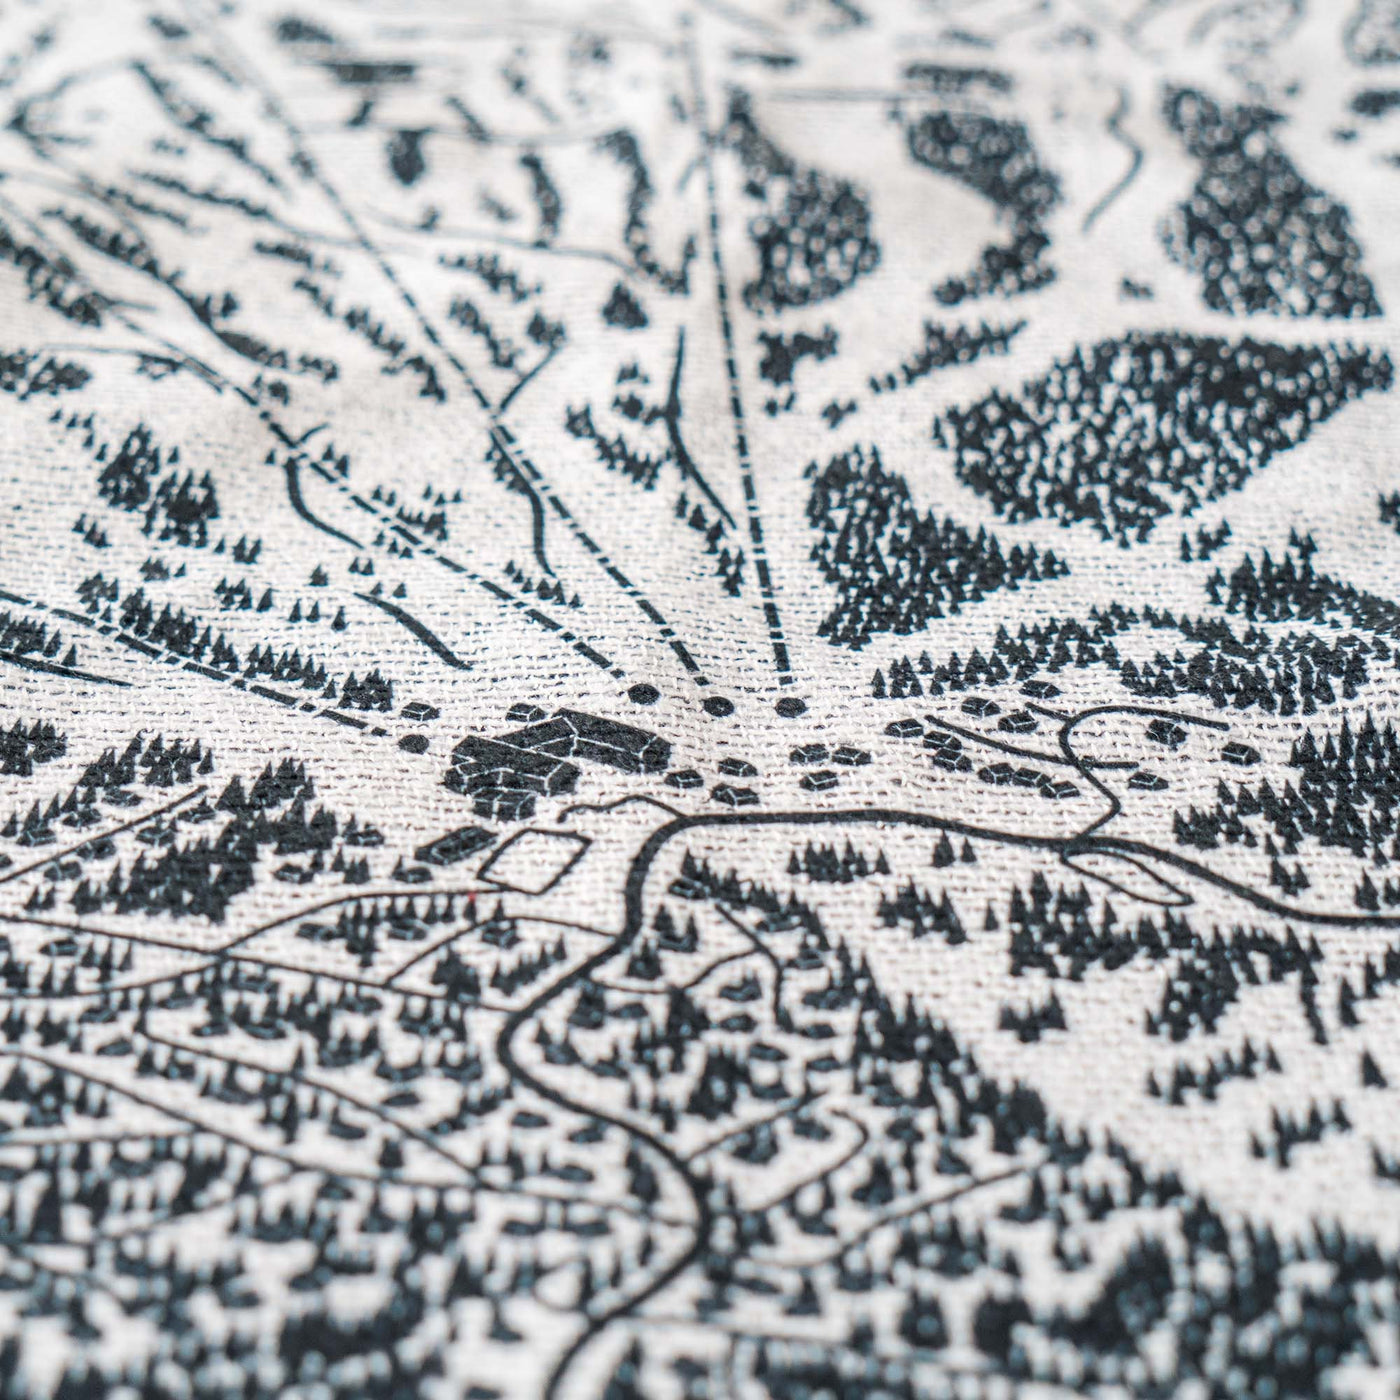 Sugarbush, Vermont Ski Trail Map Blankets